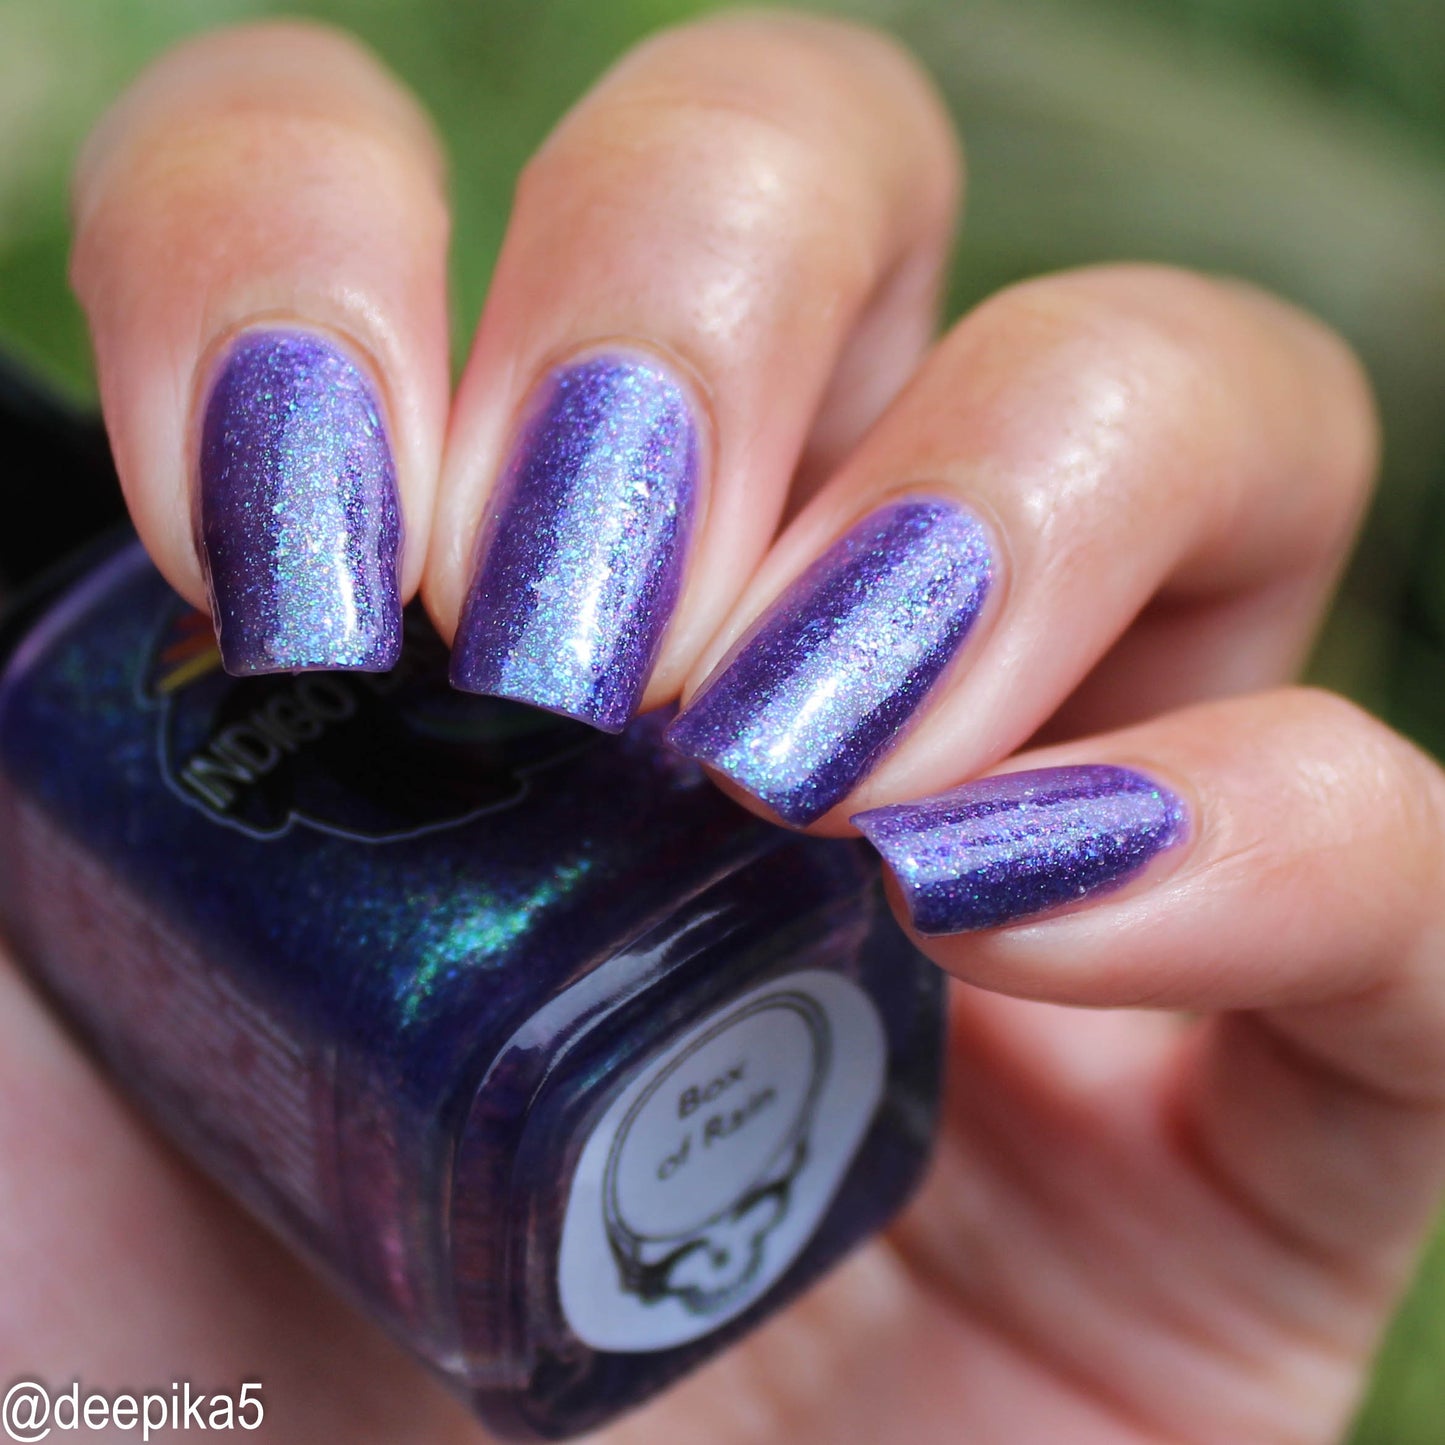 Box of Rain - purple shimmer mix (w/ Auroras) - glow in the dark - matte